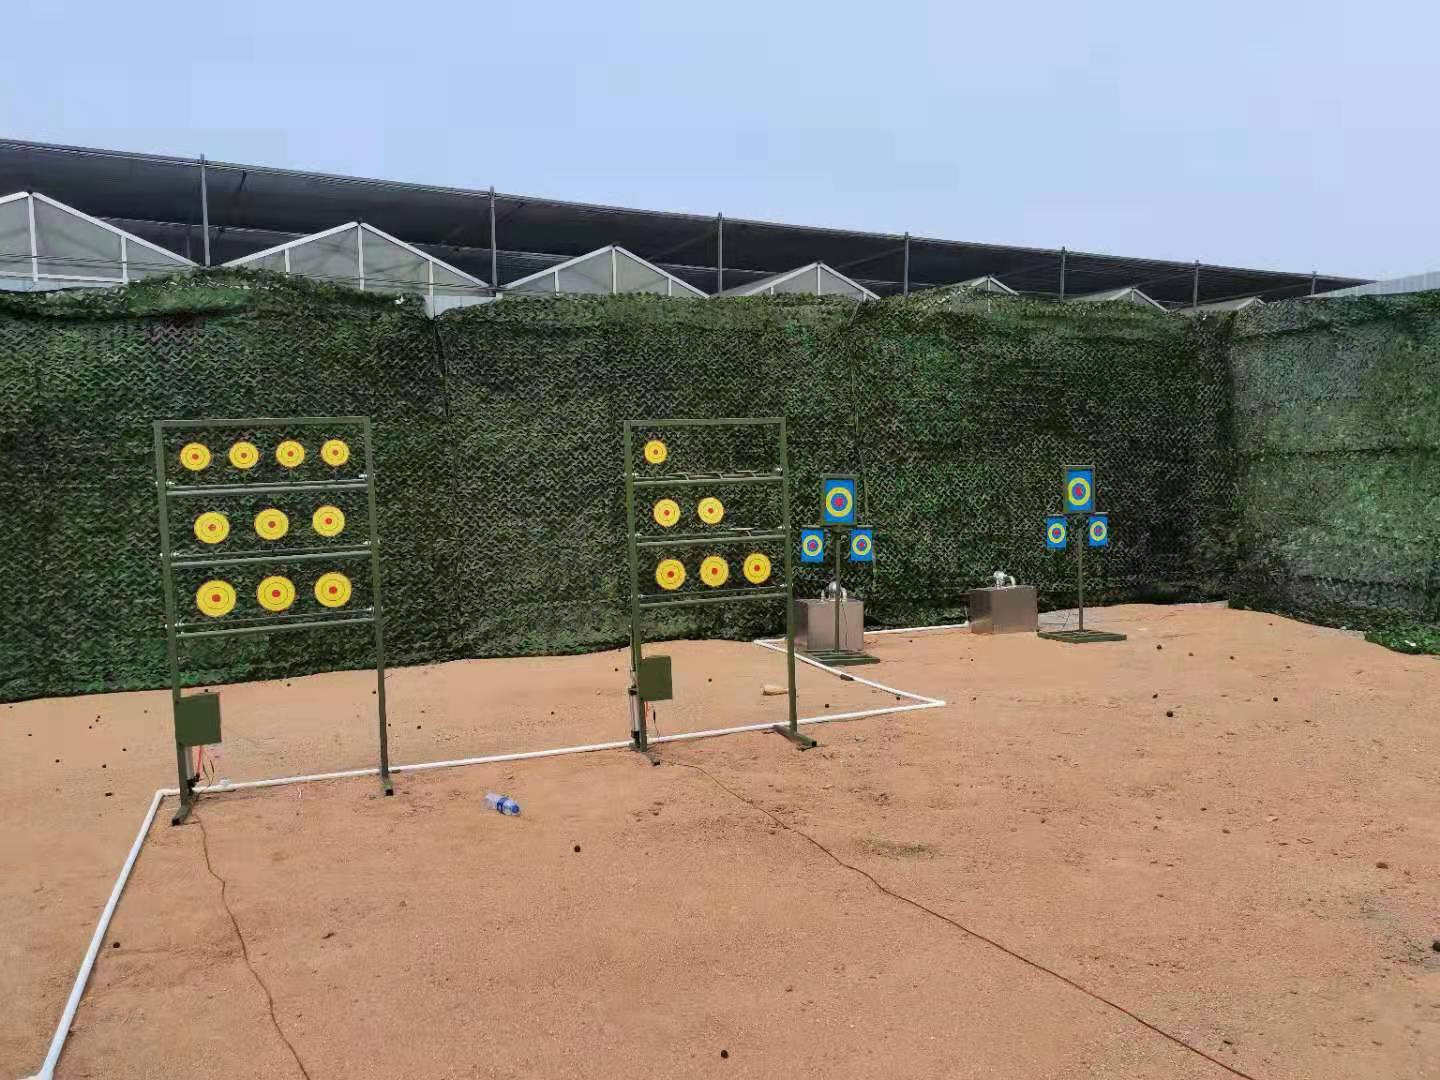 东南大学2018级学生军训团圆满完成实弹射击任务